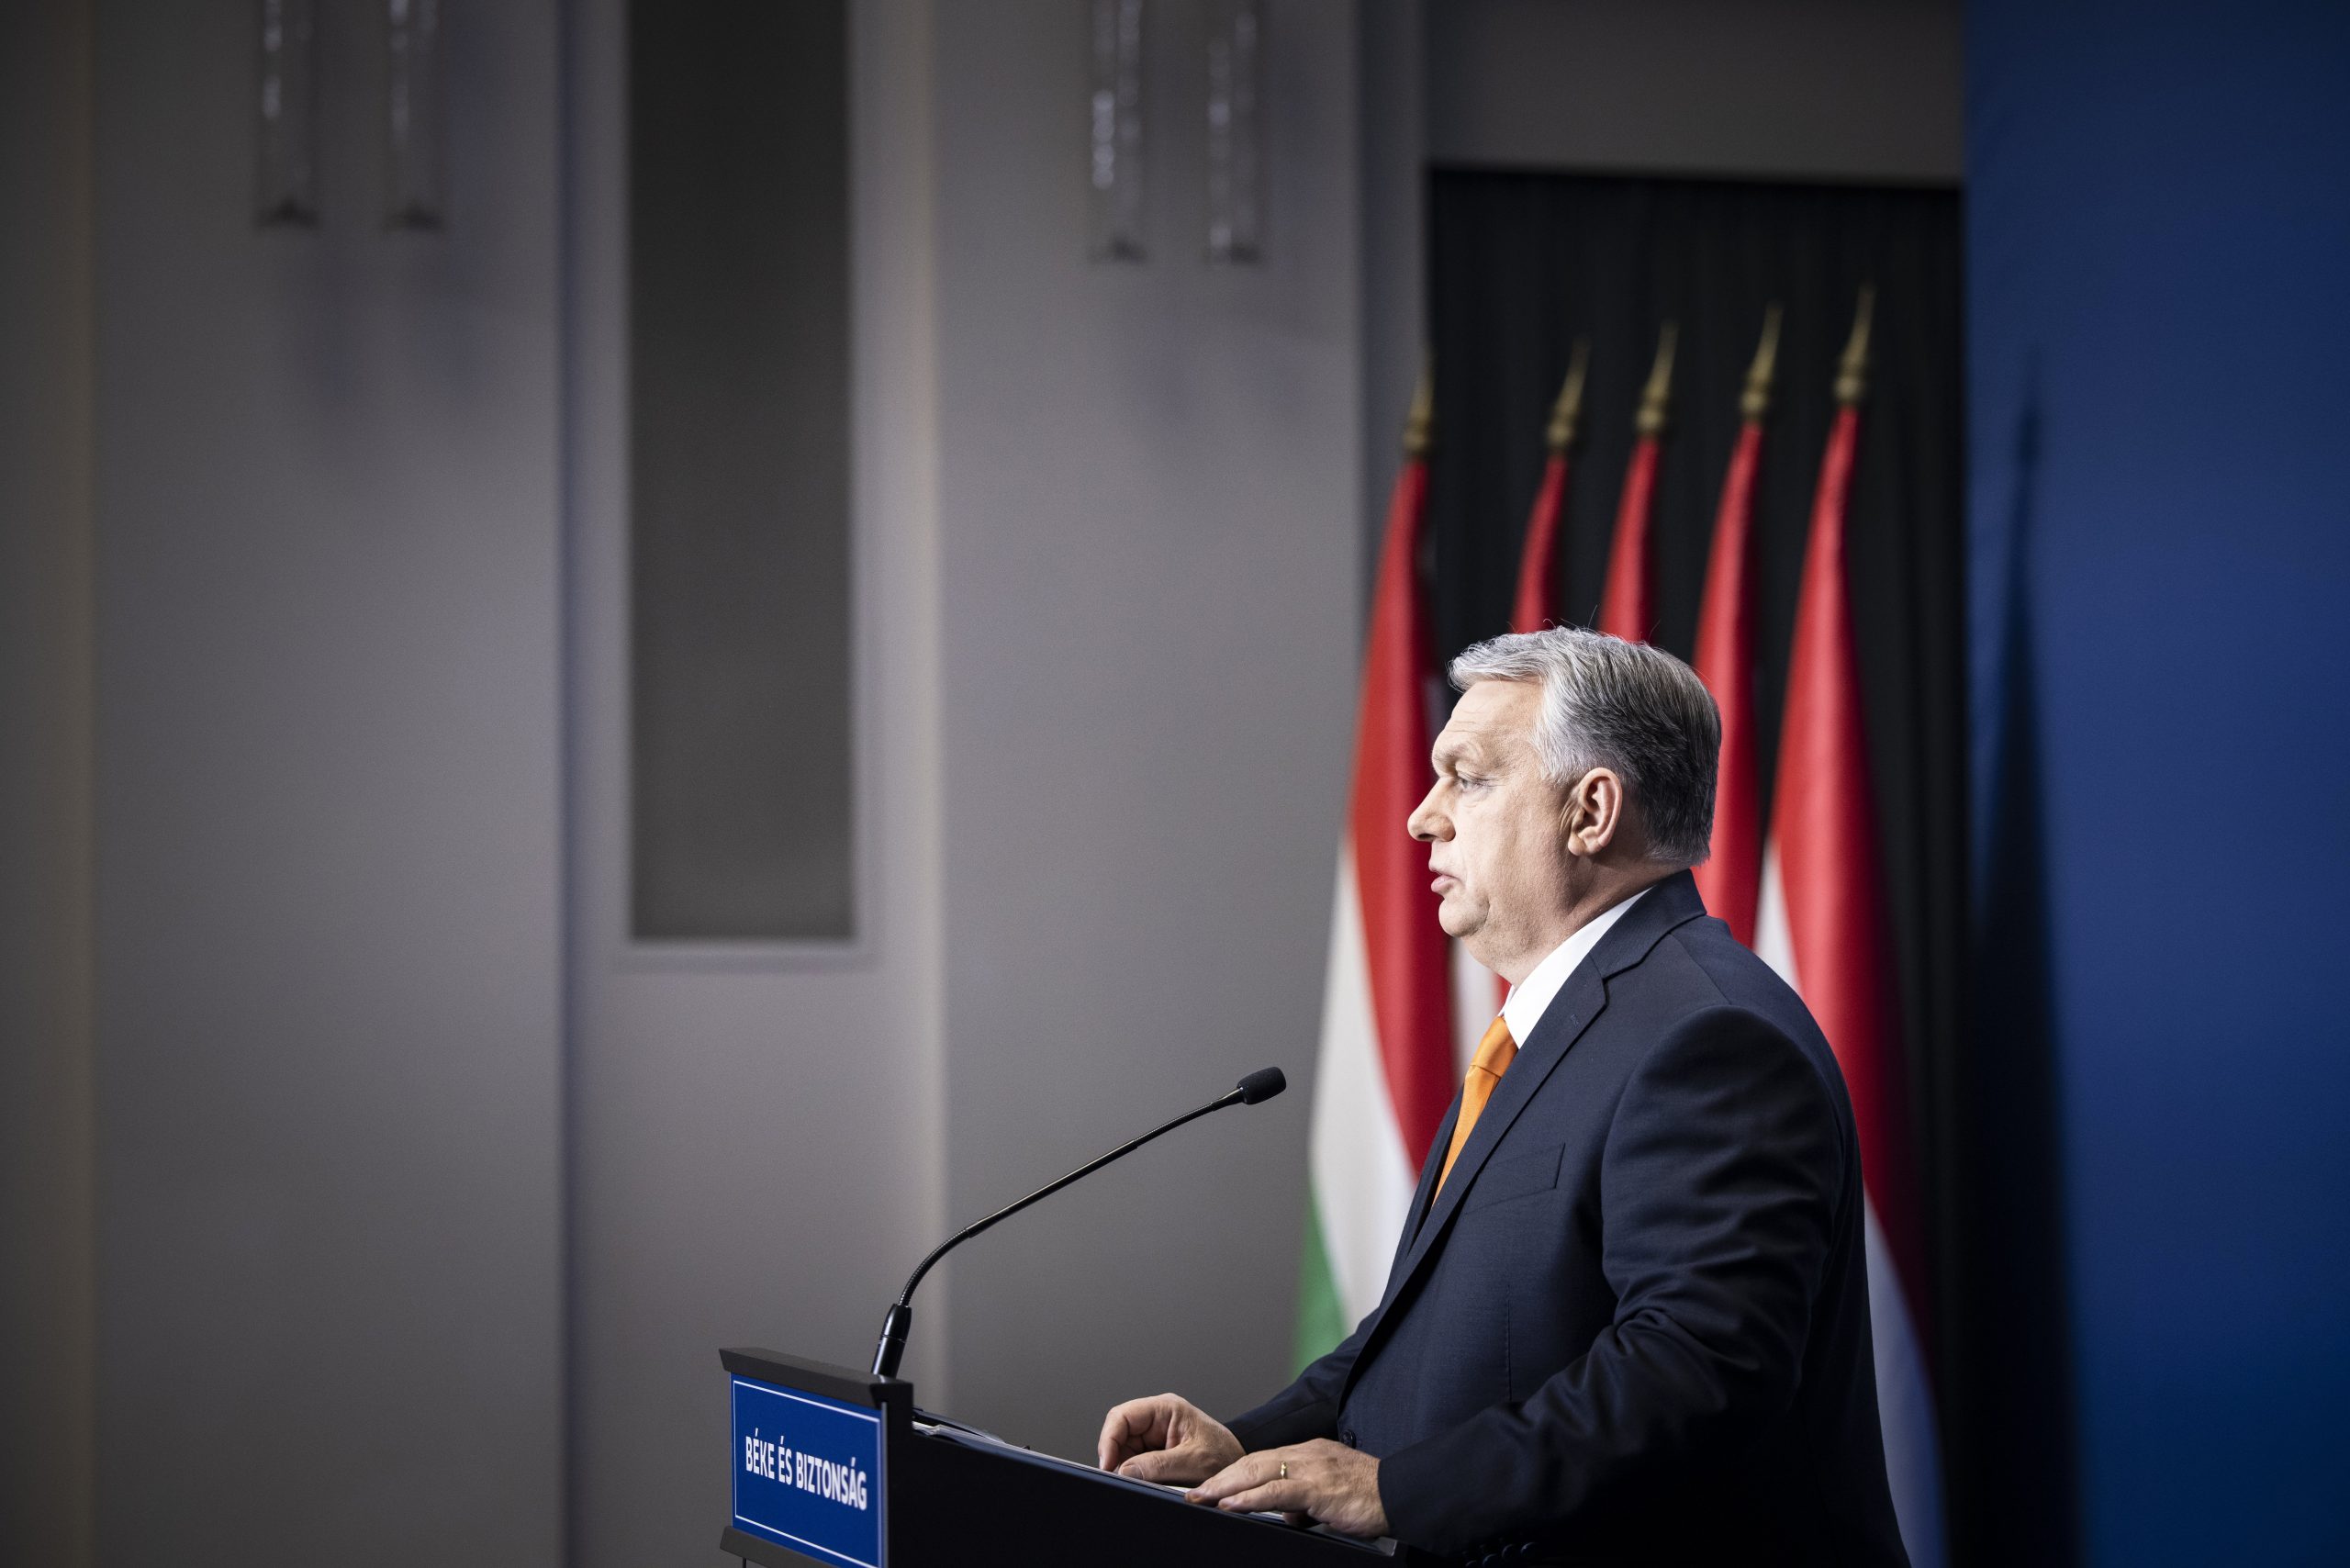 Orbán schlägt Putin einen sofortigen Waffenstillstand vor